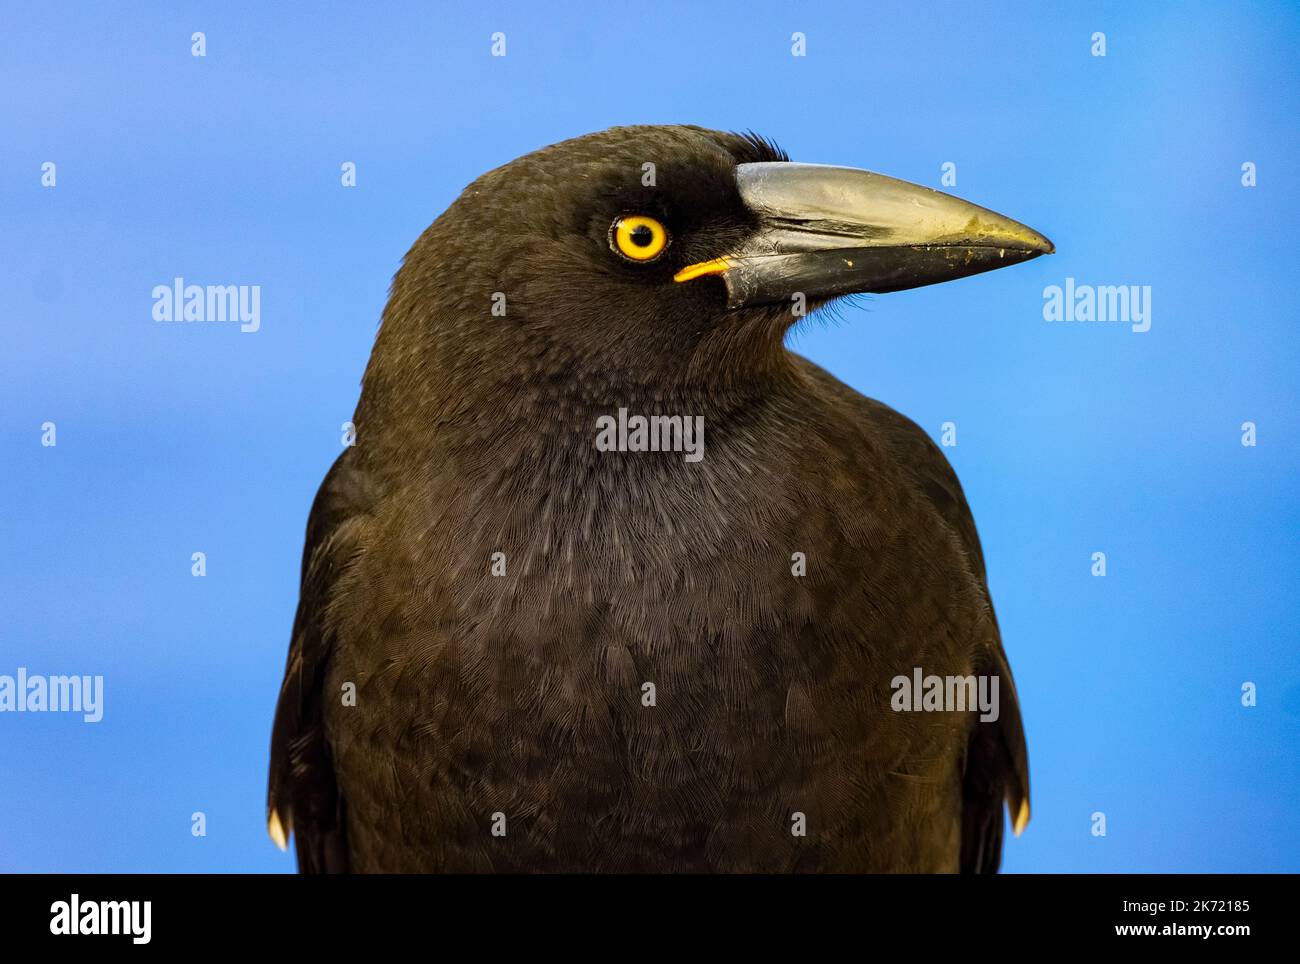 Der scharfe, schnepfige, goldene Auge und Schnabel des australischen Urvogels, der als Currawong bezeichnet wird. Artname: Strepera Stockfoto